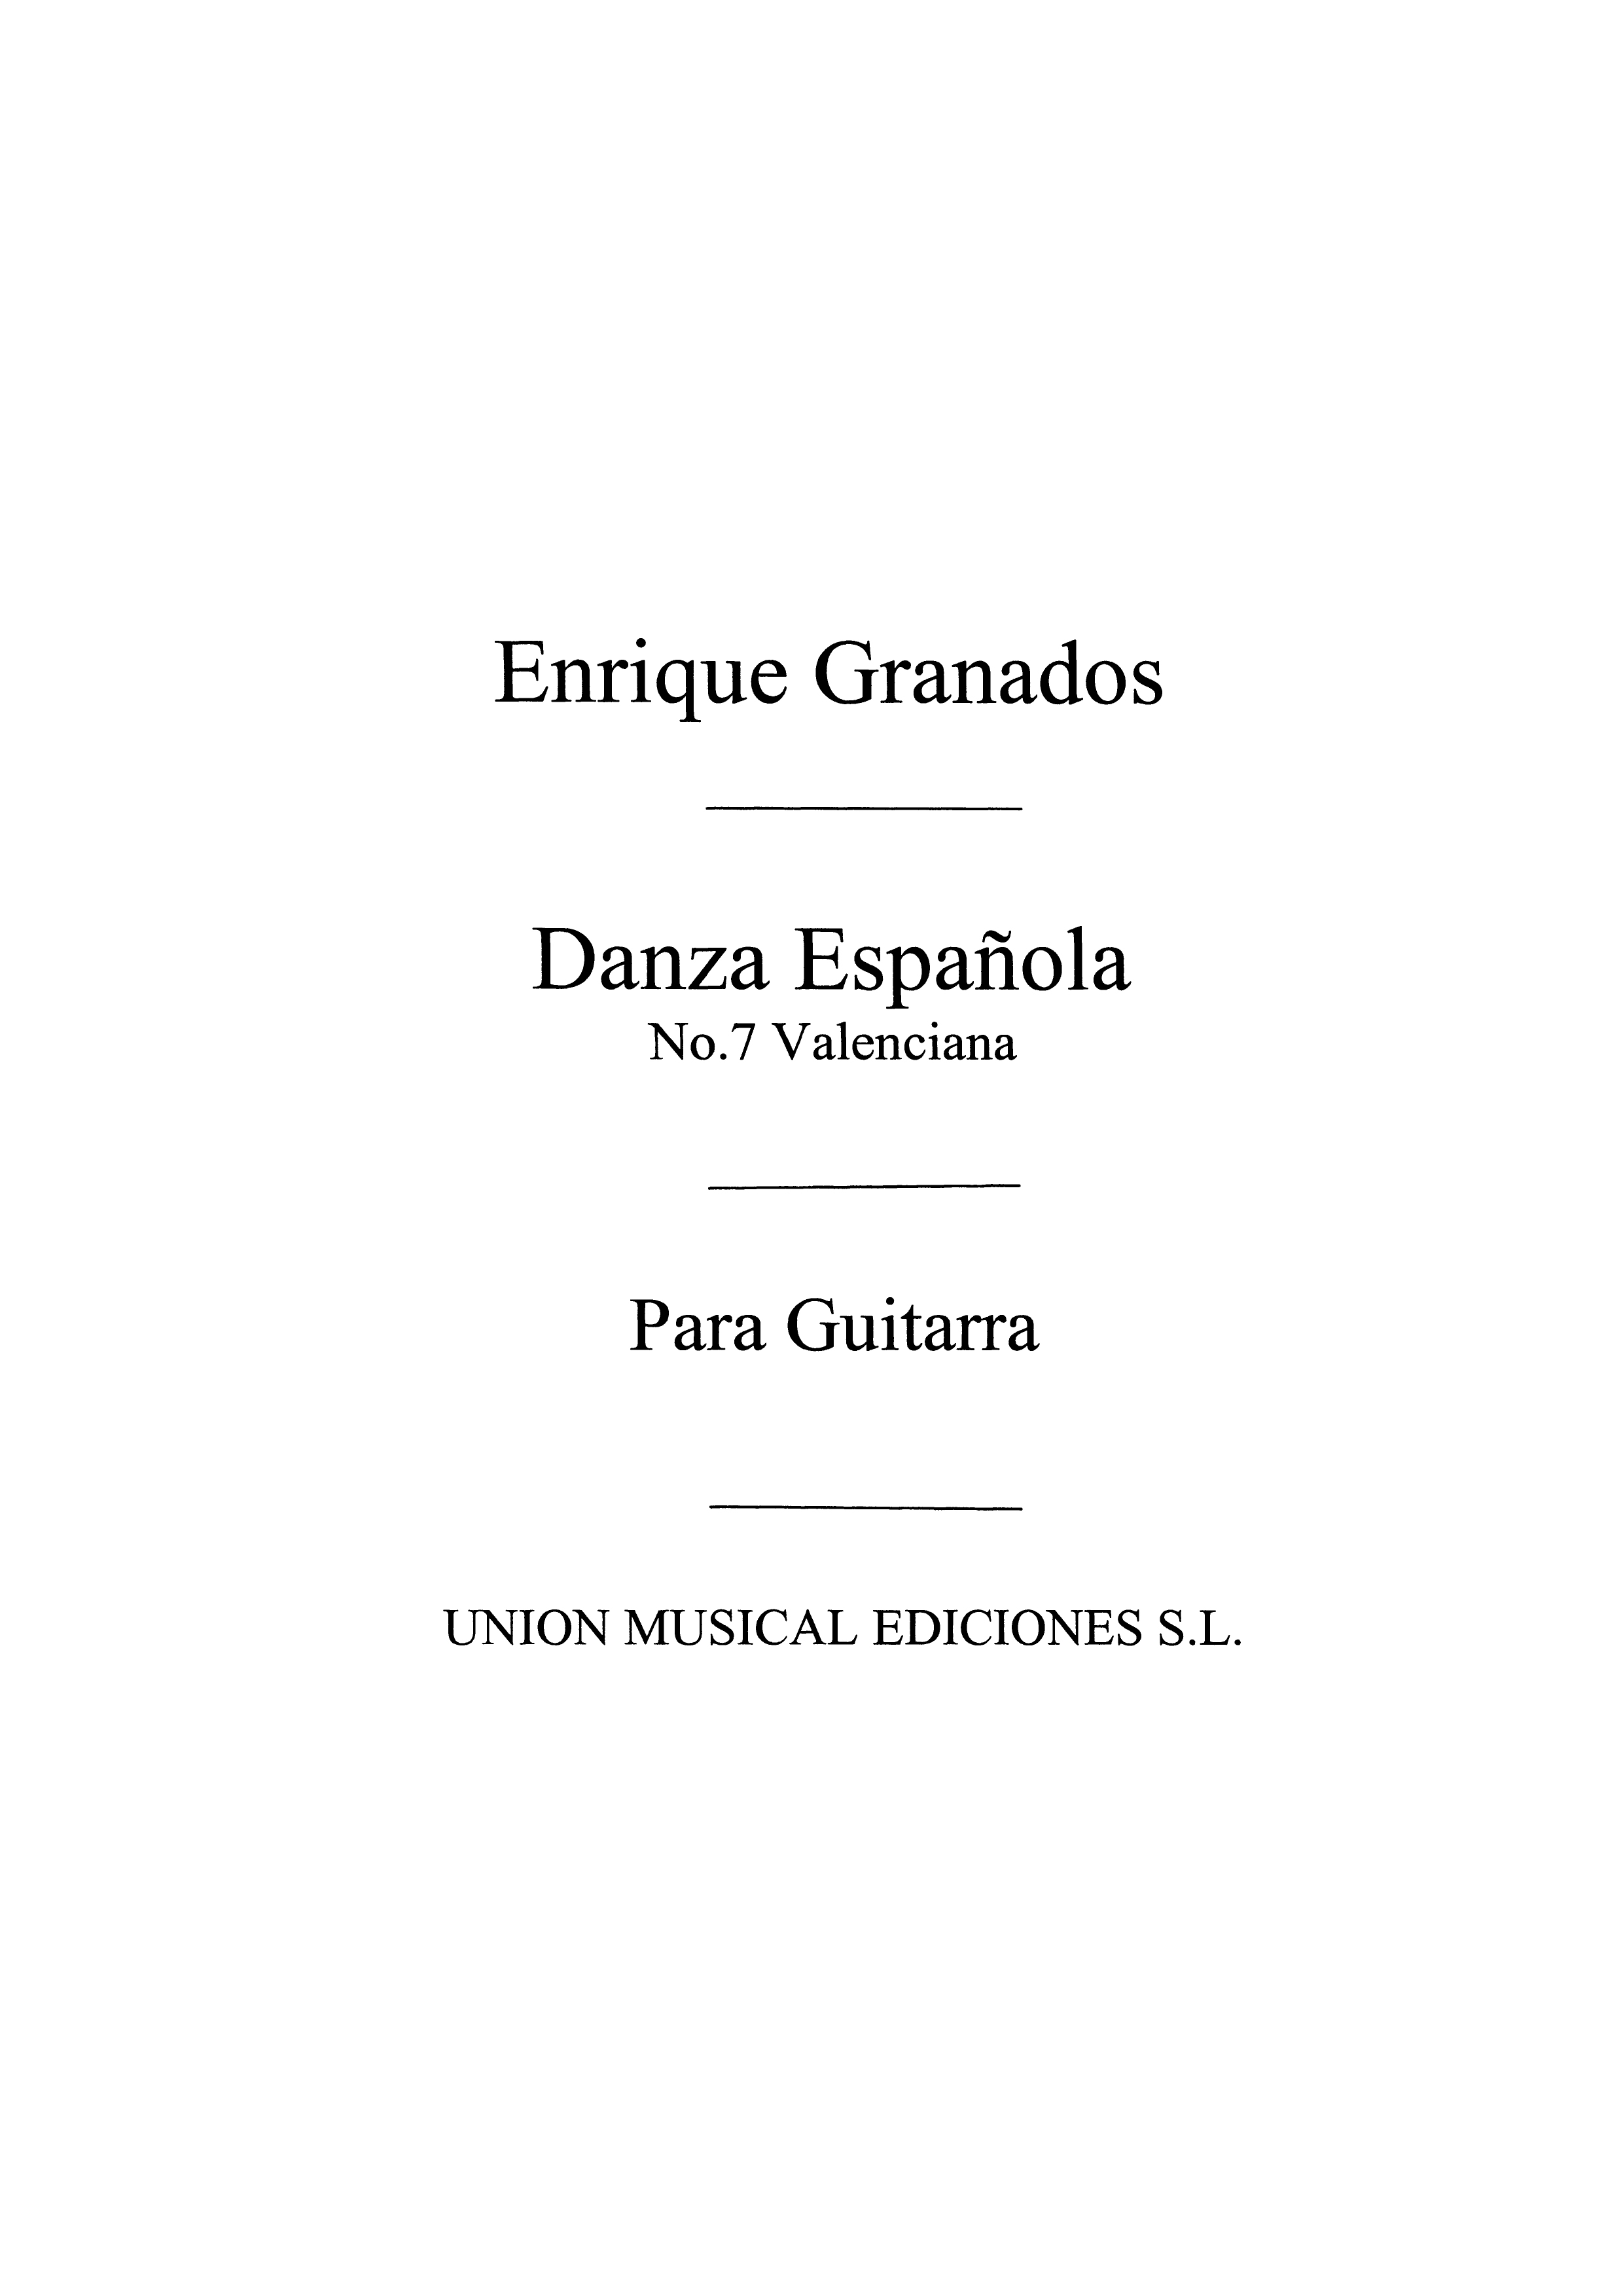 Enrique Granados: Danza Espanola No.7 Valenciana: Guitar: Instrumental Work